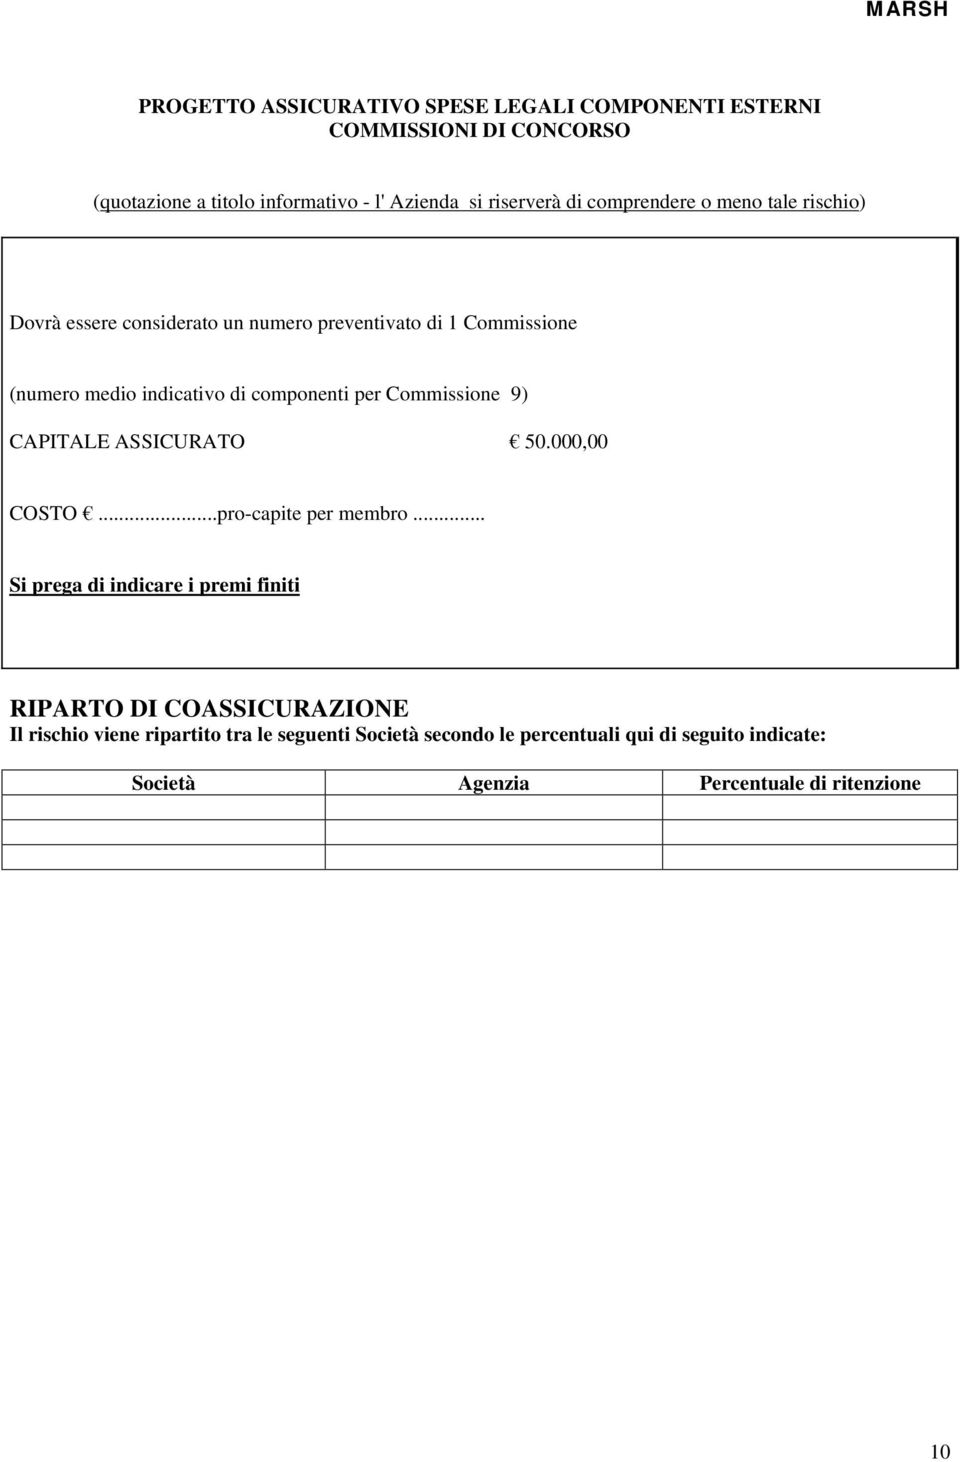 Commissione 9) CAPITALE ASSICURATO 50.000,00 COSTO...pro-capite per membro.